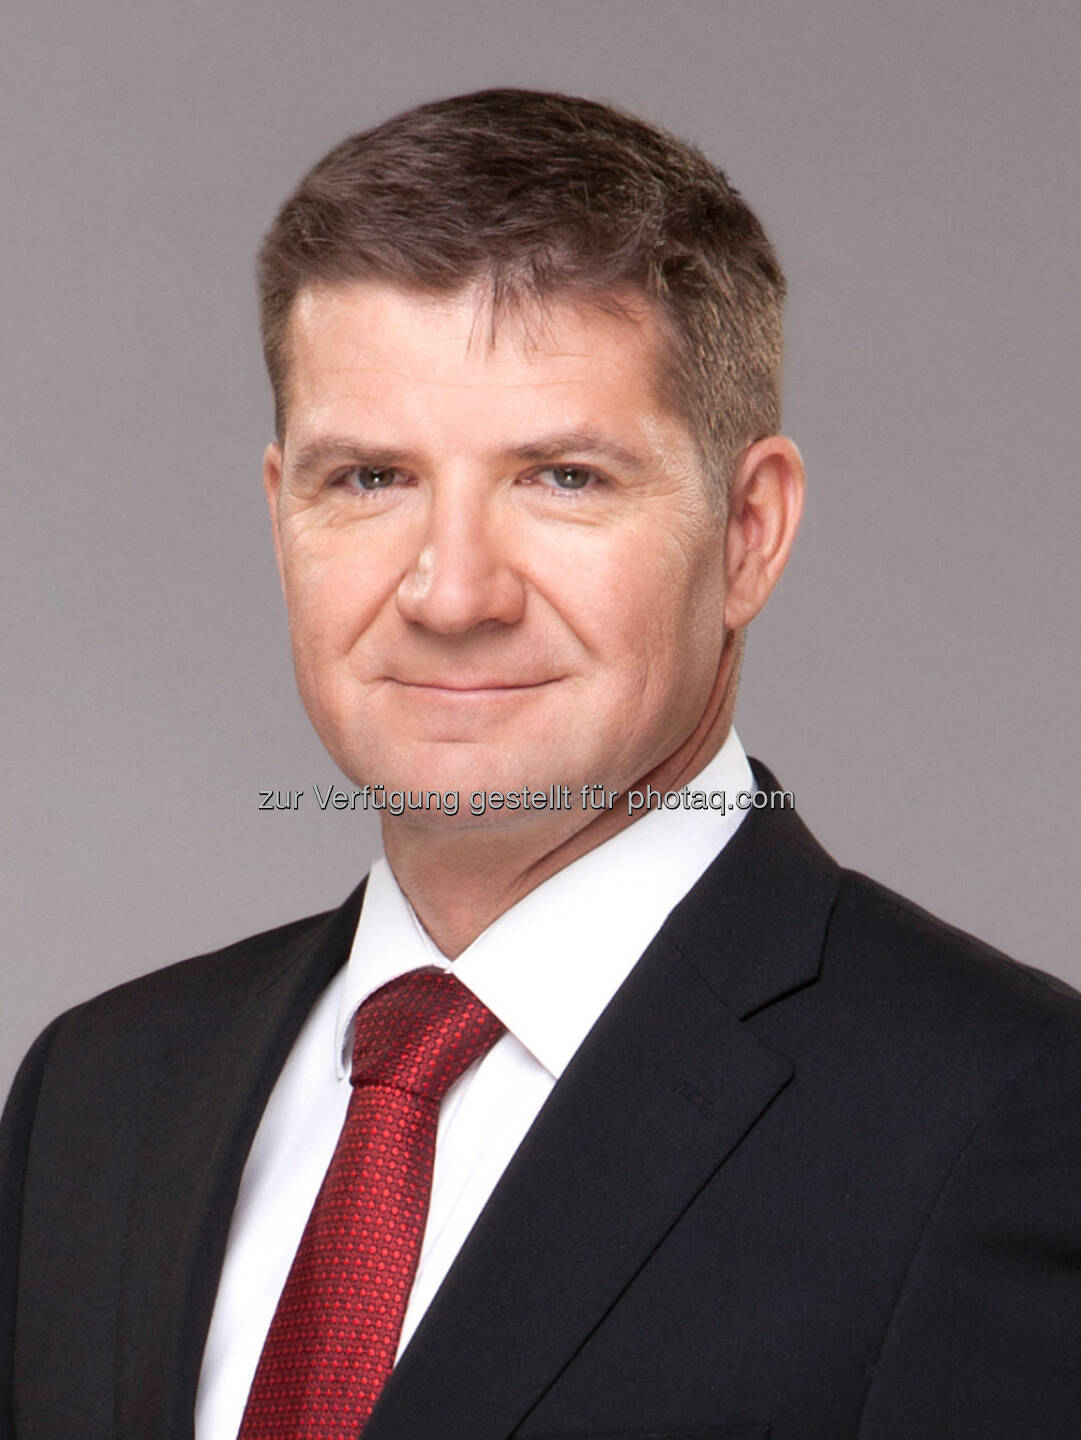 Dejan Turk, Telekom Austria Group: Serbische Tochter Vip mobile ernennt Dejan Turk zum neuen CEO